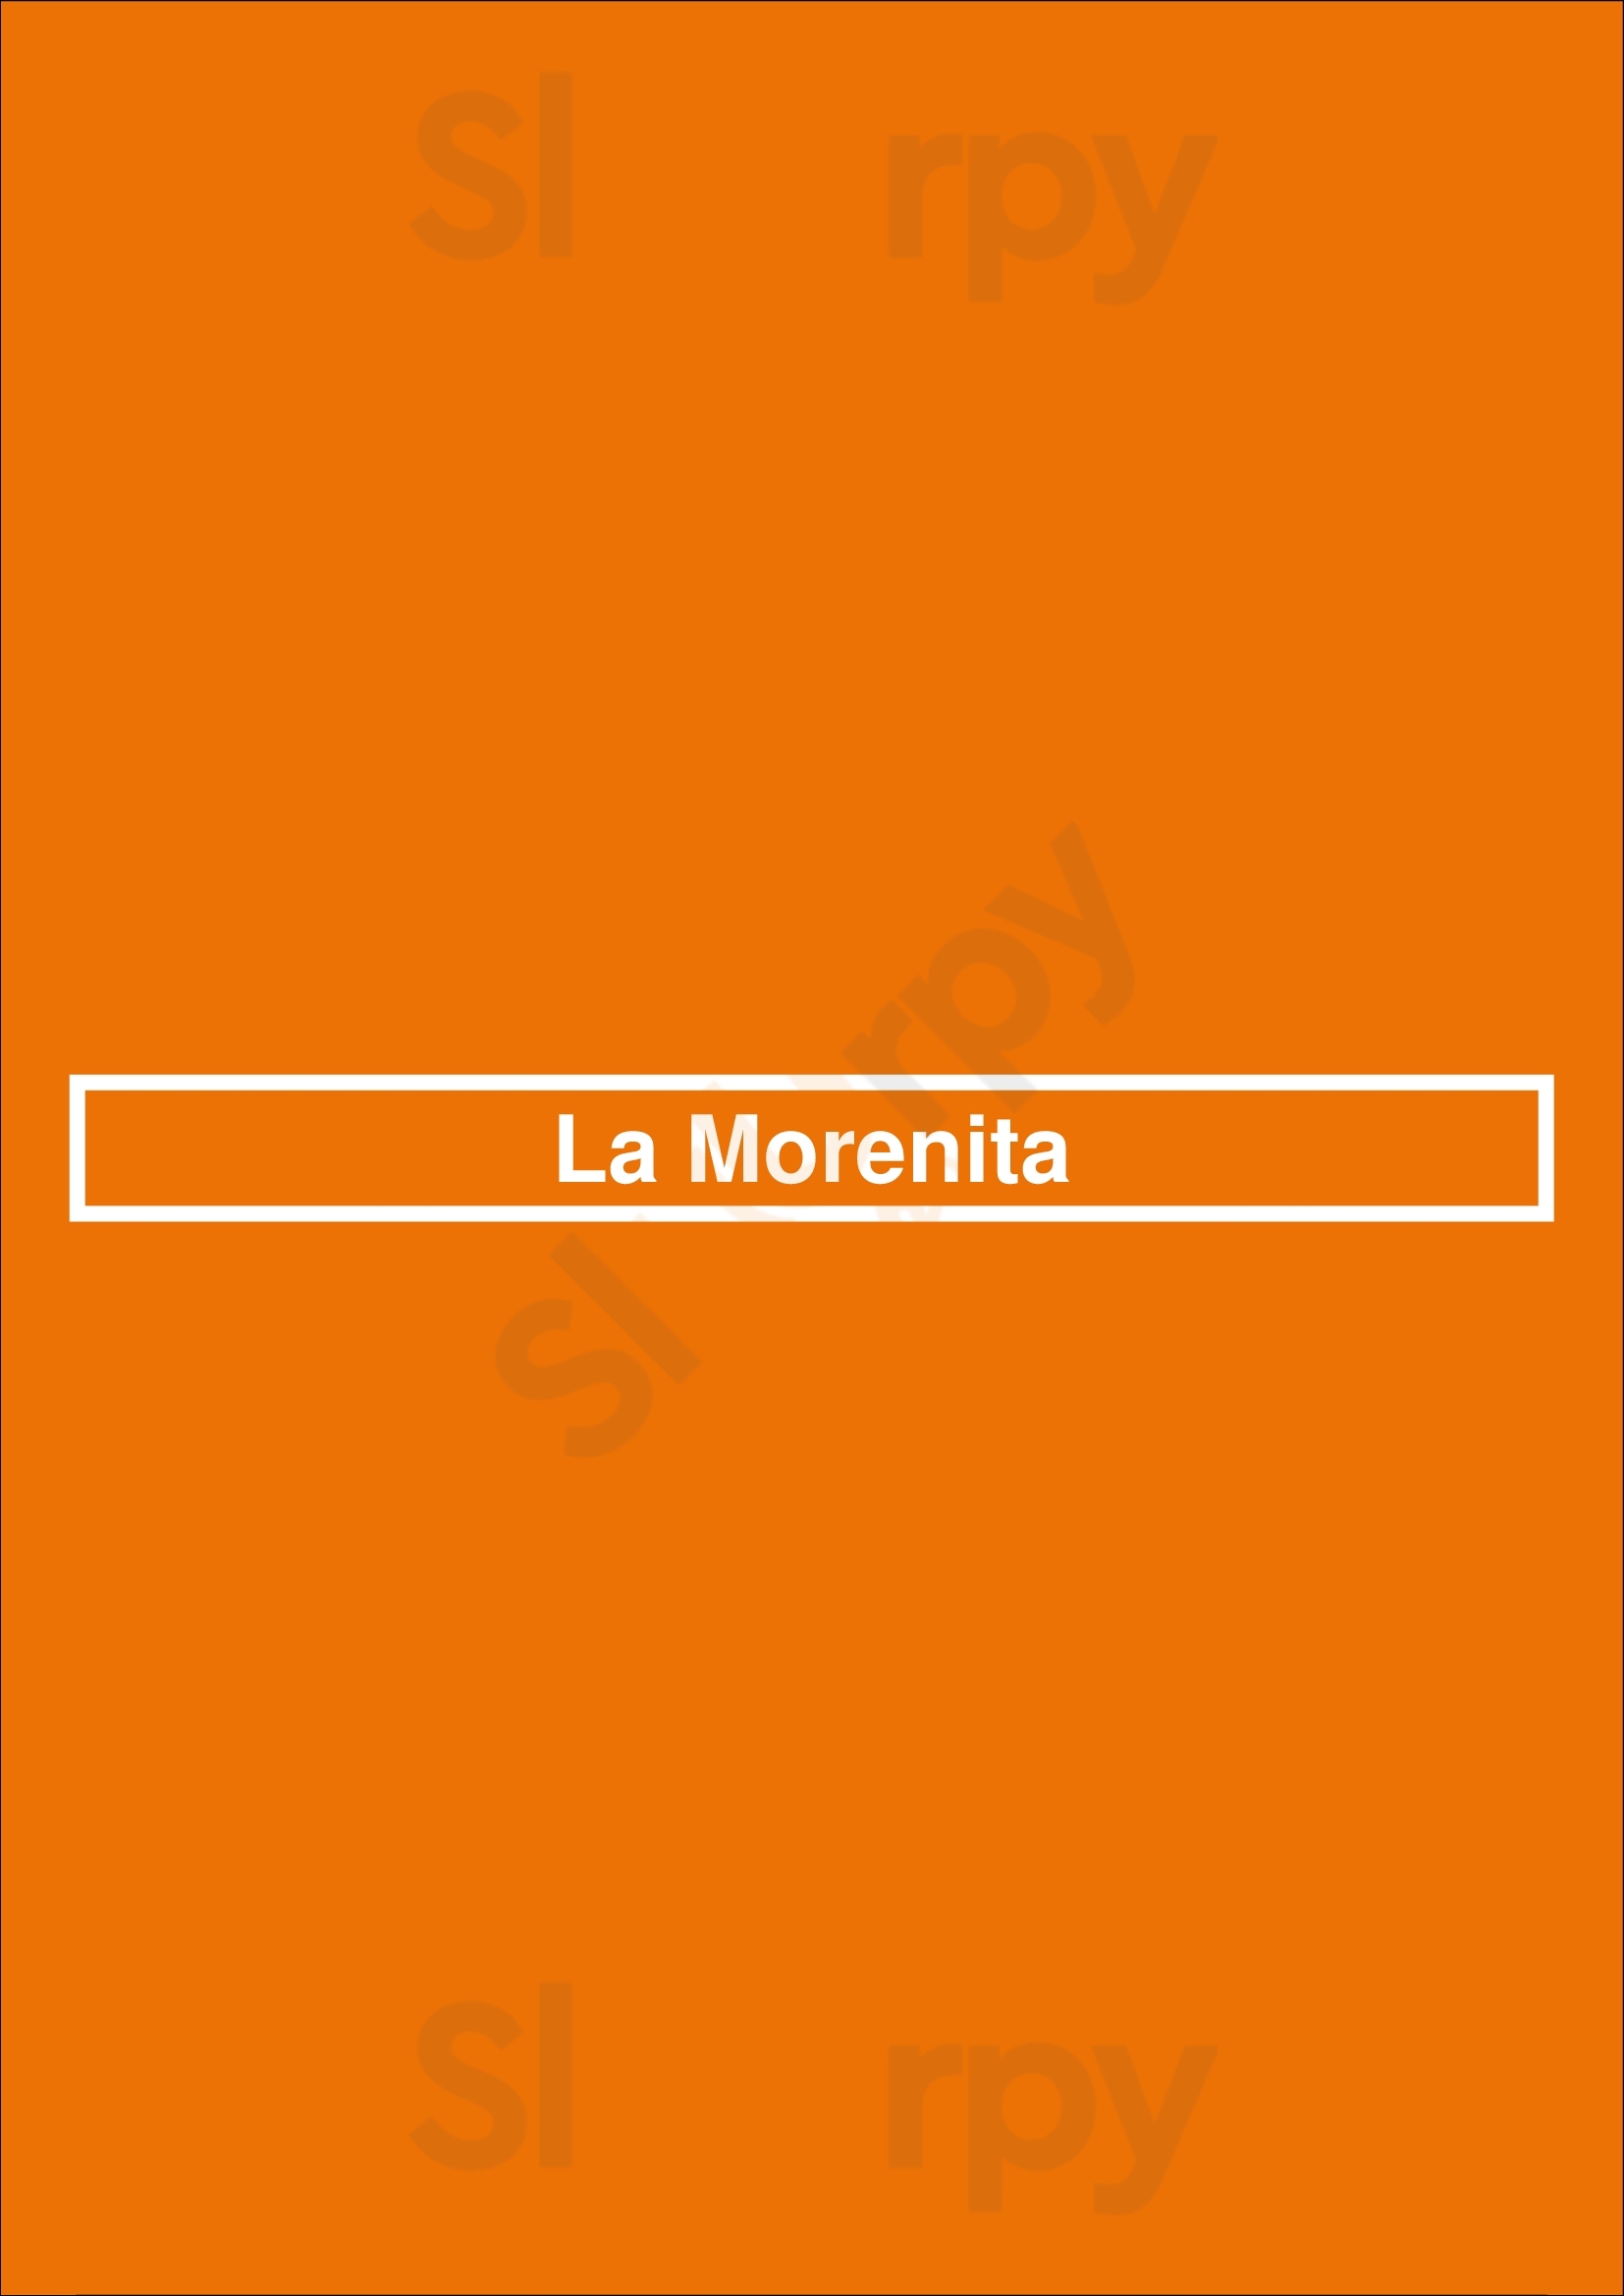 La Morenita Los Angeles Menu - 1